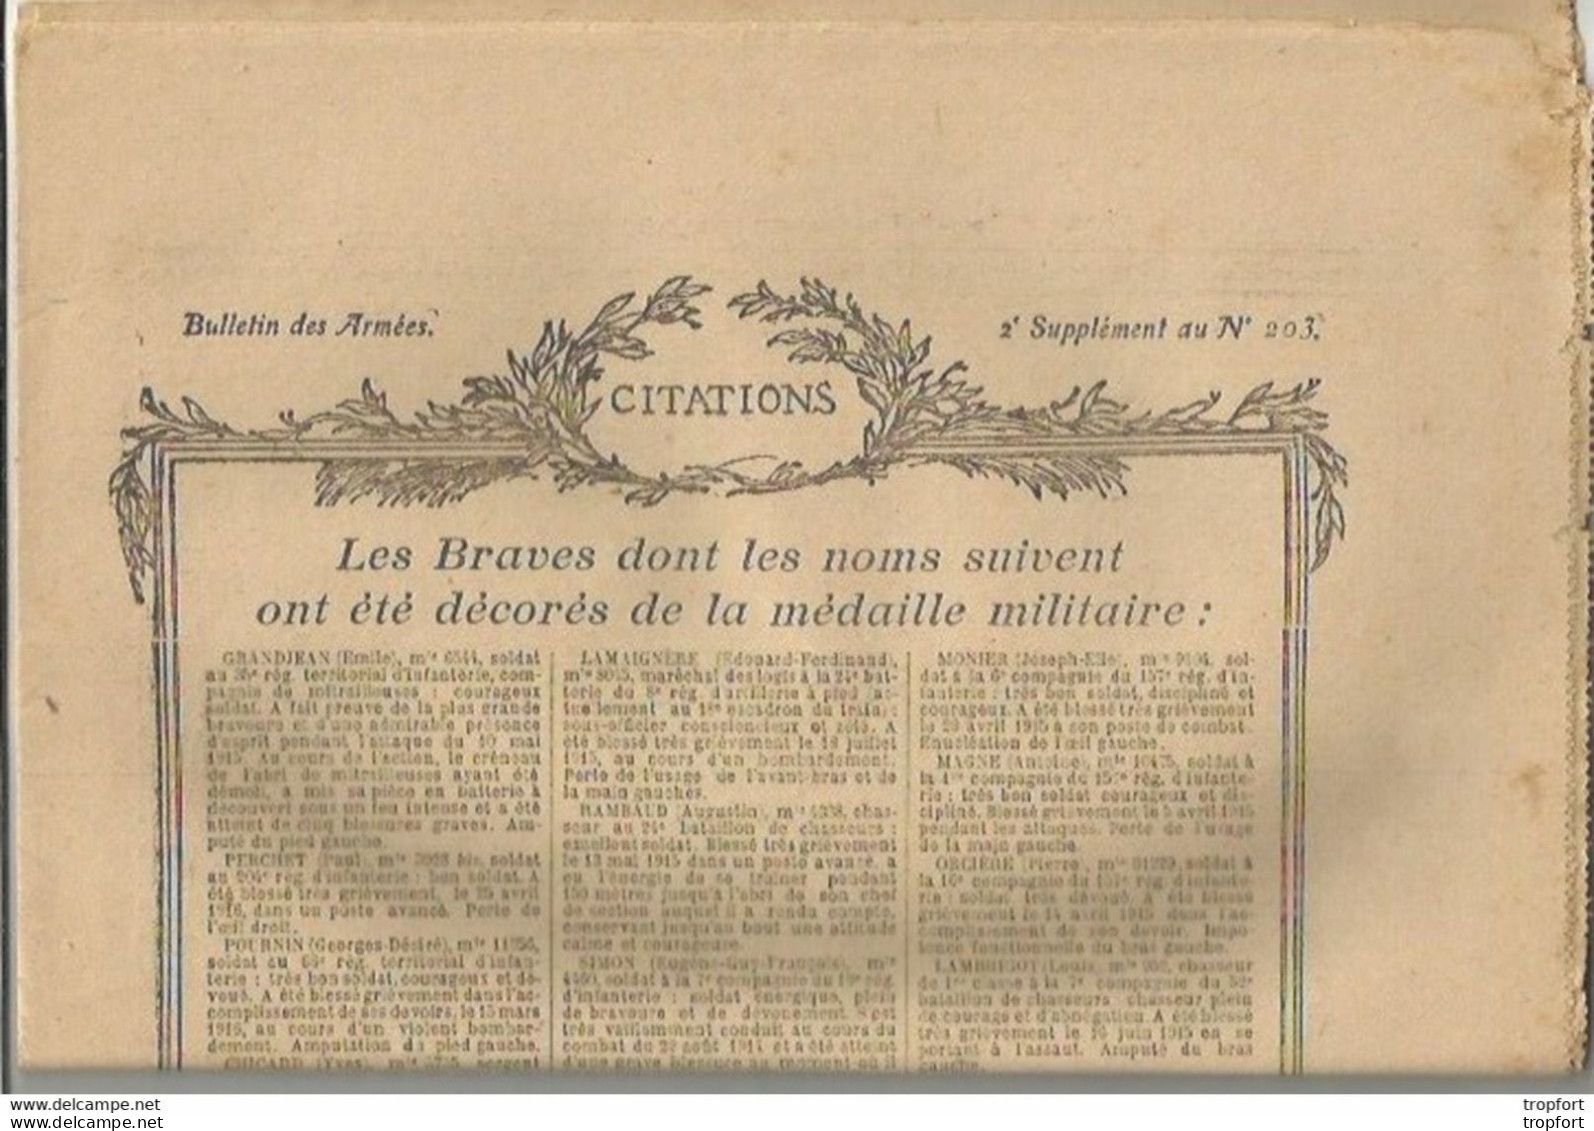 TH / Rare Journal BULLETIN DES ARMEES CITATIONS N°203 WW1 16 Pages MILITAIRES Citation 1914 1918 Guerre Bléssés - Testi Generali